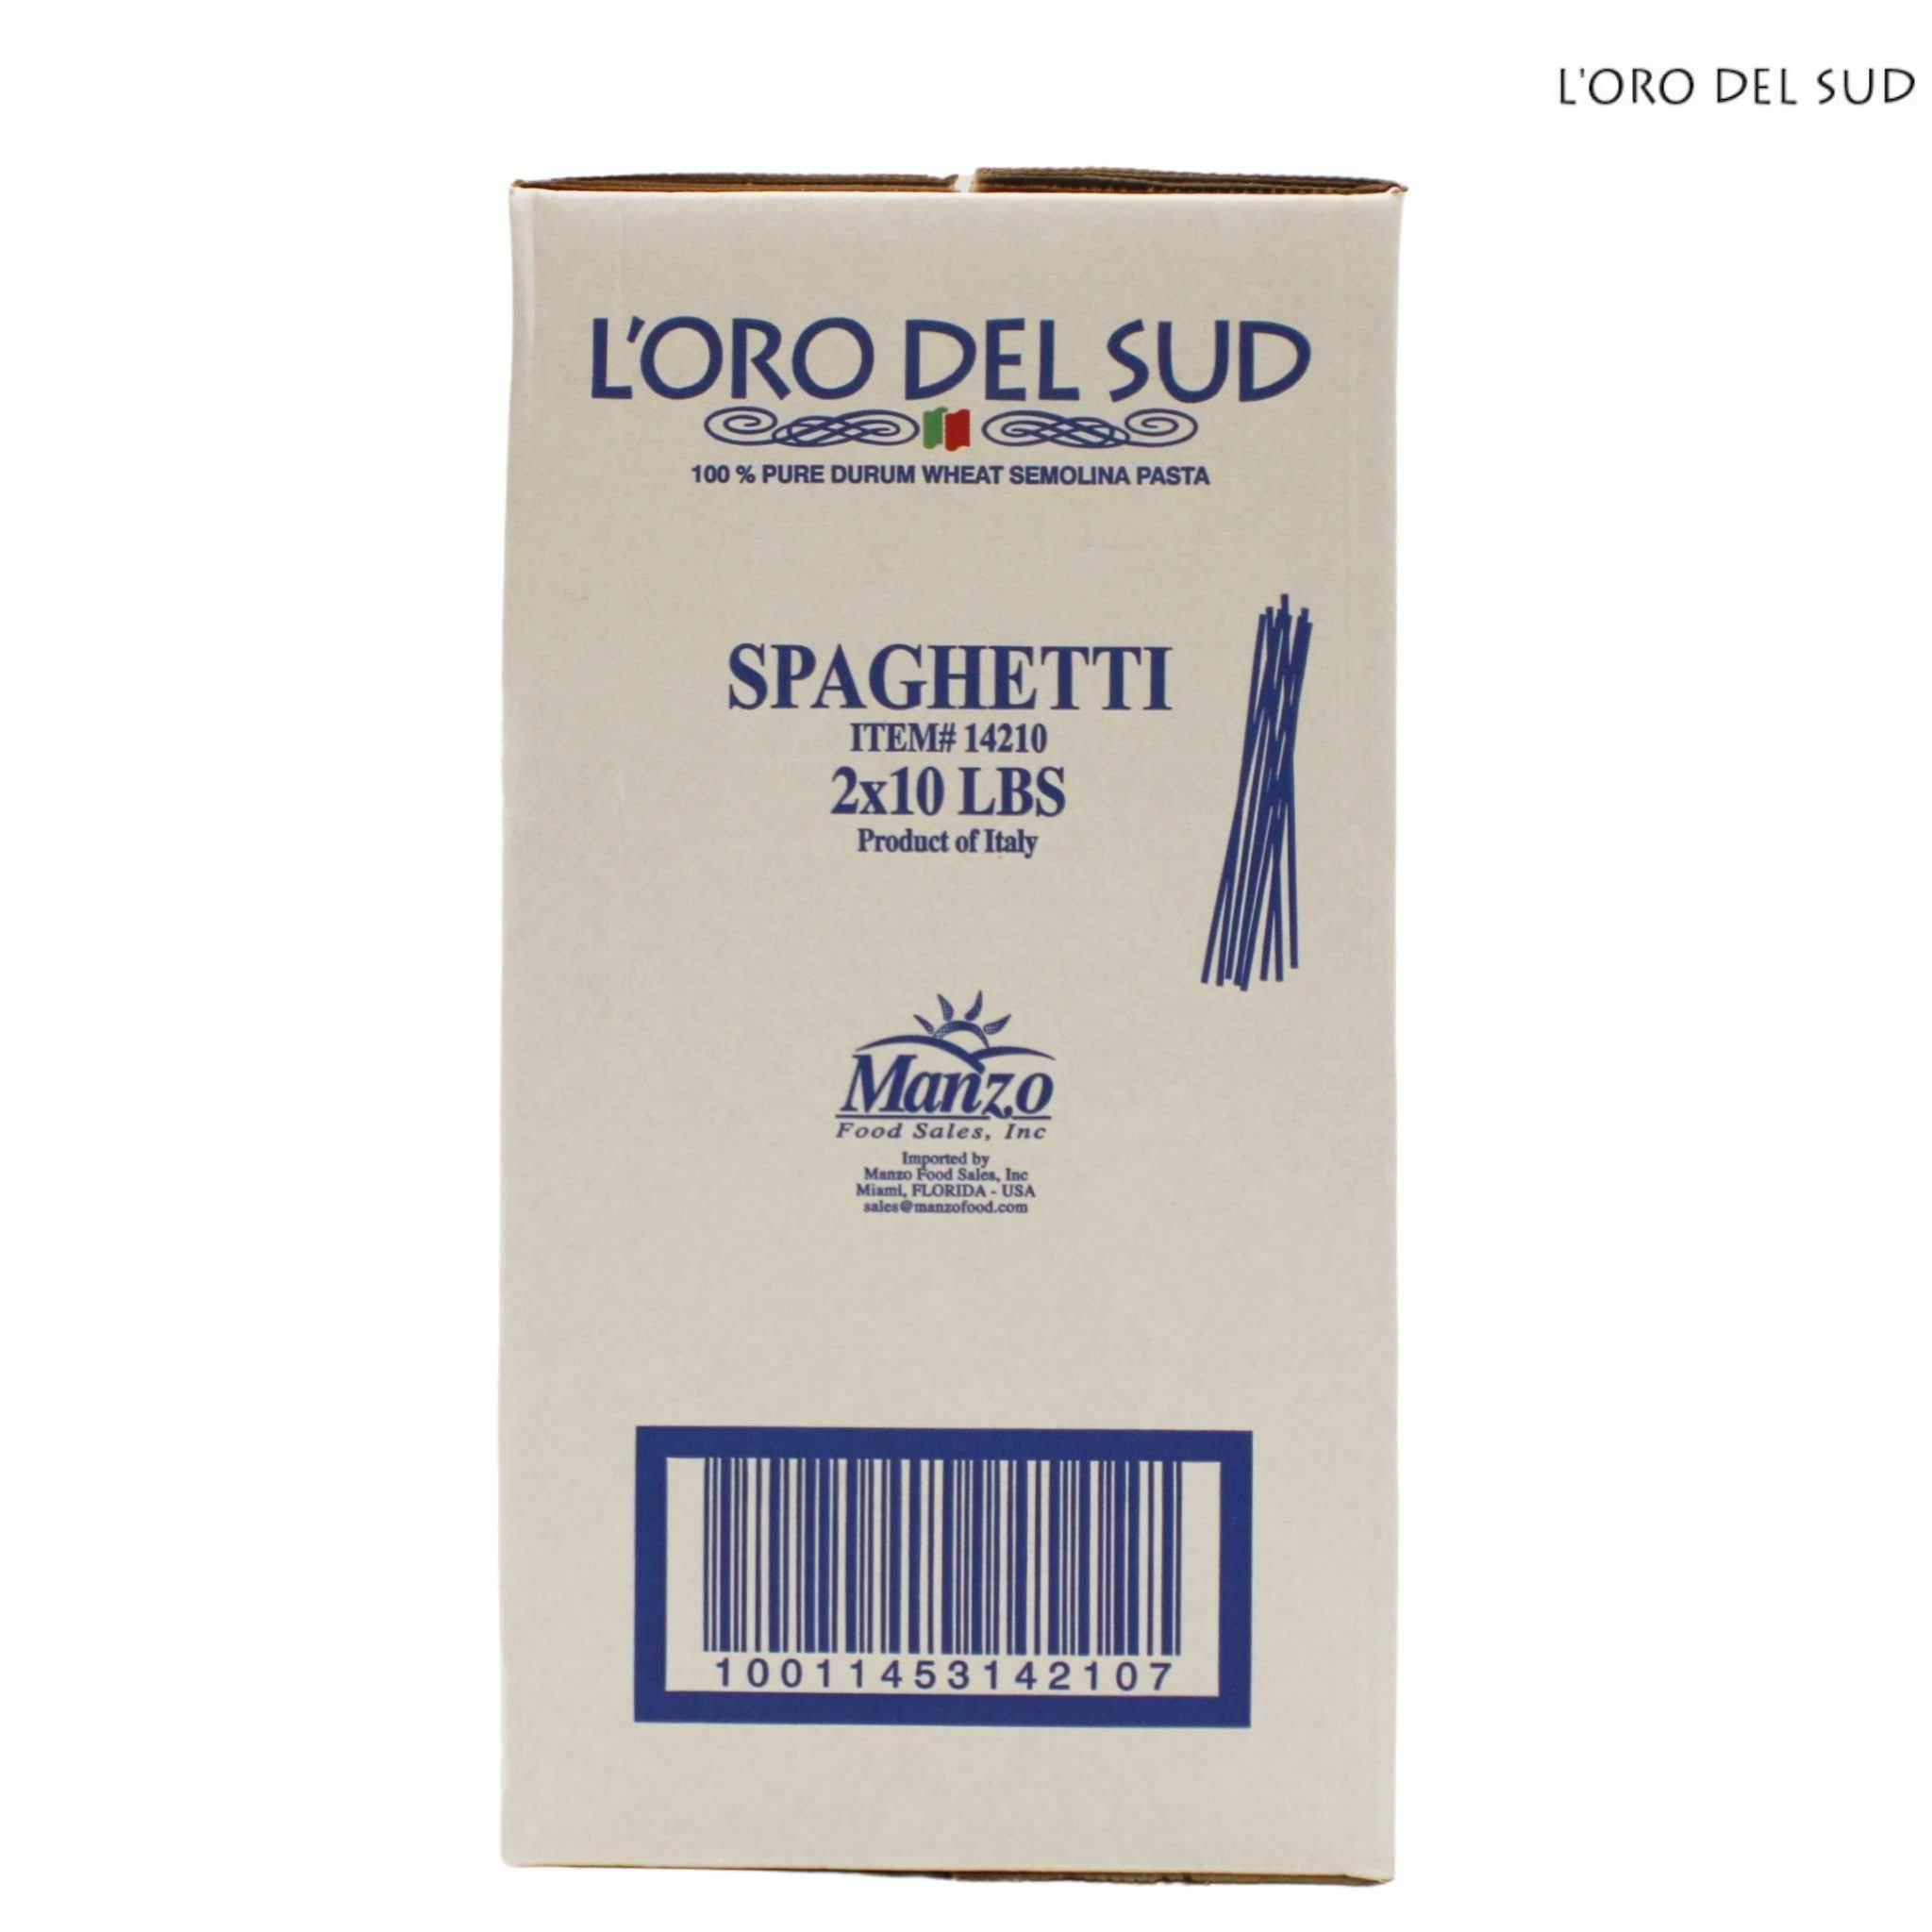 L'Oro Del Sud Spaghetti Pasta - 10lb Bag Case